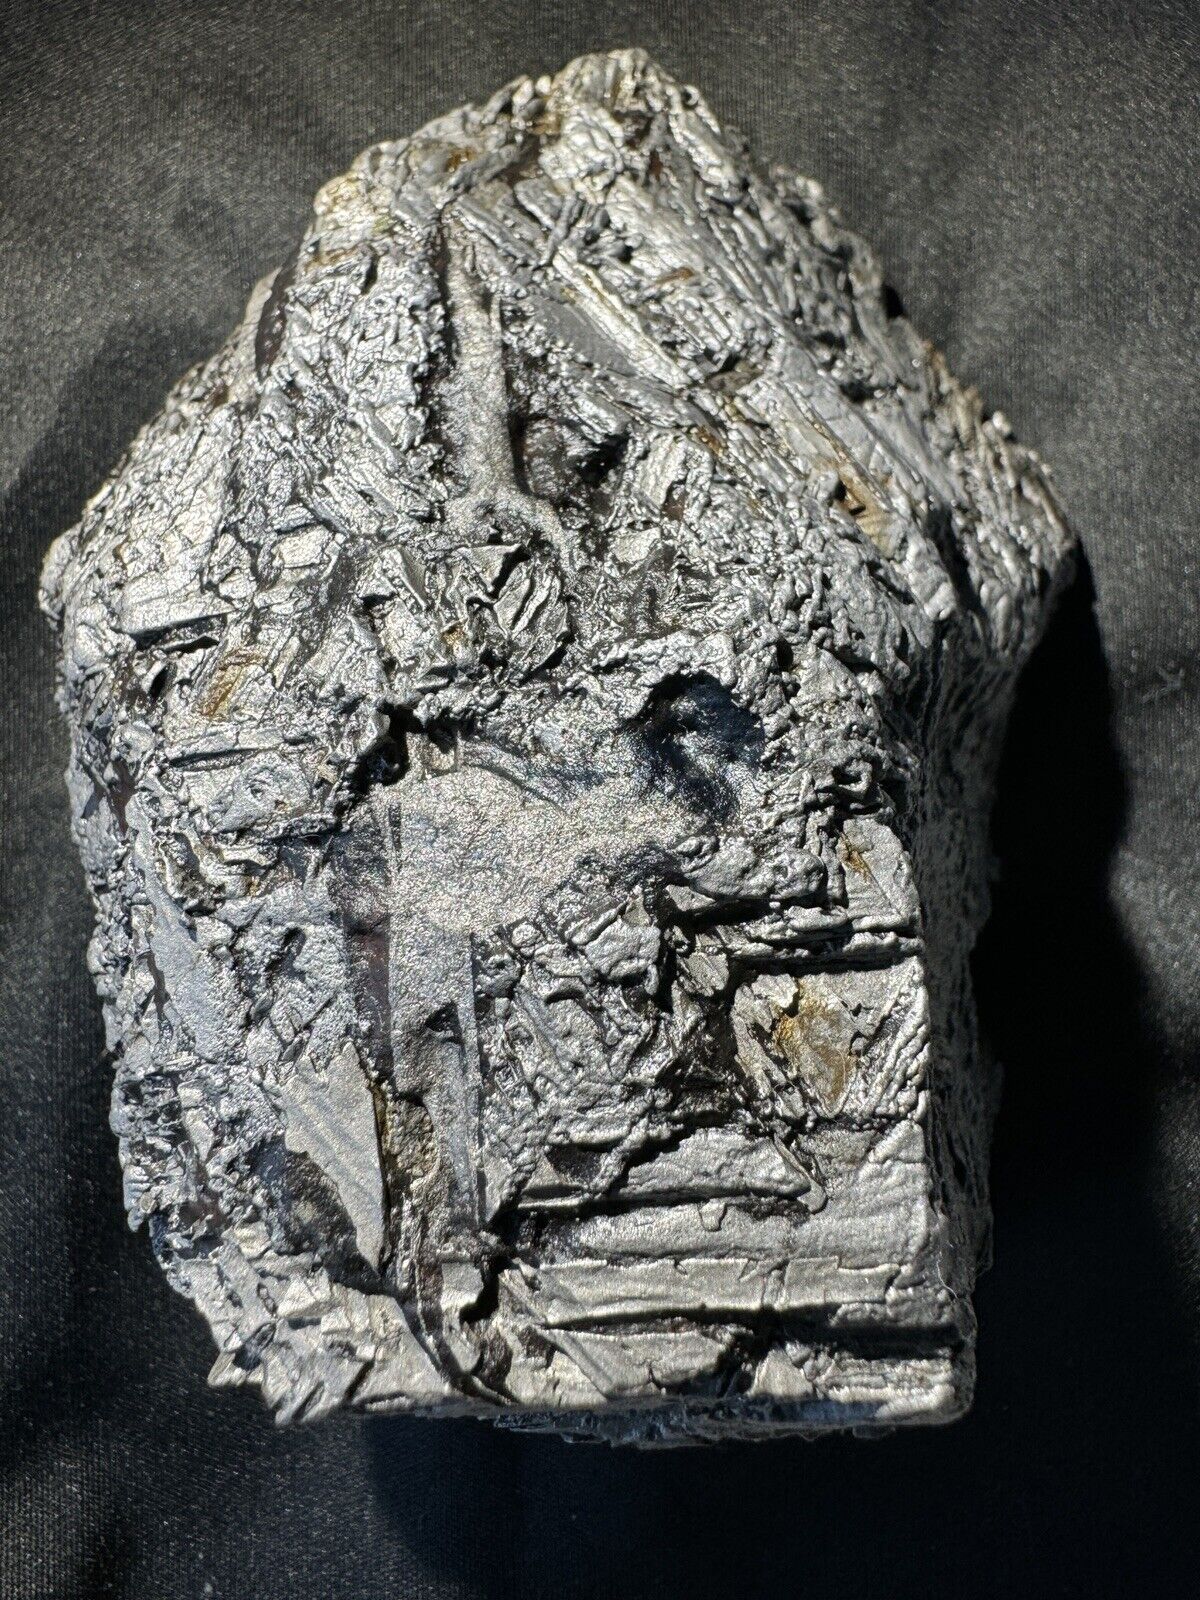 TOP Natural Aletai Iron Meteorite 1365 Grams Original Stone Perfect Fusion Crust